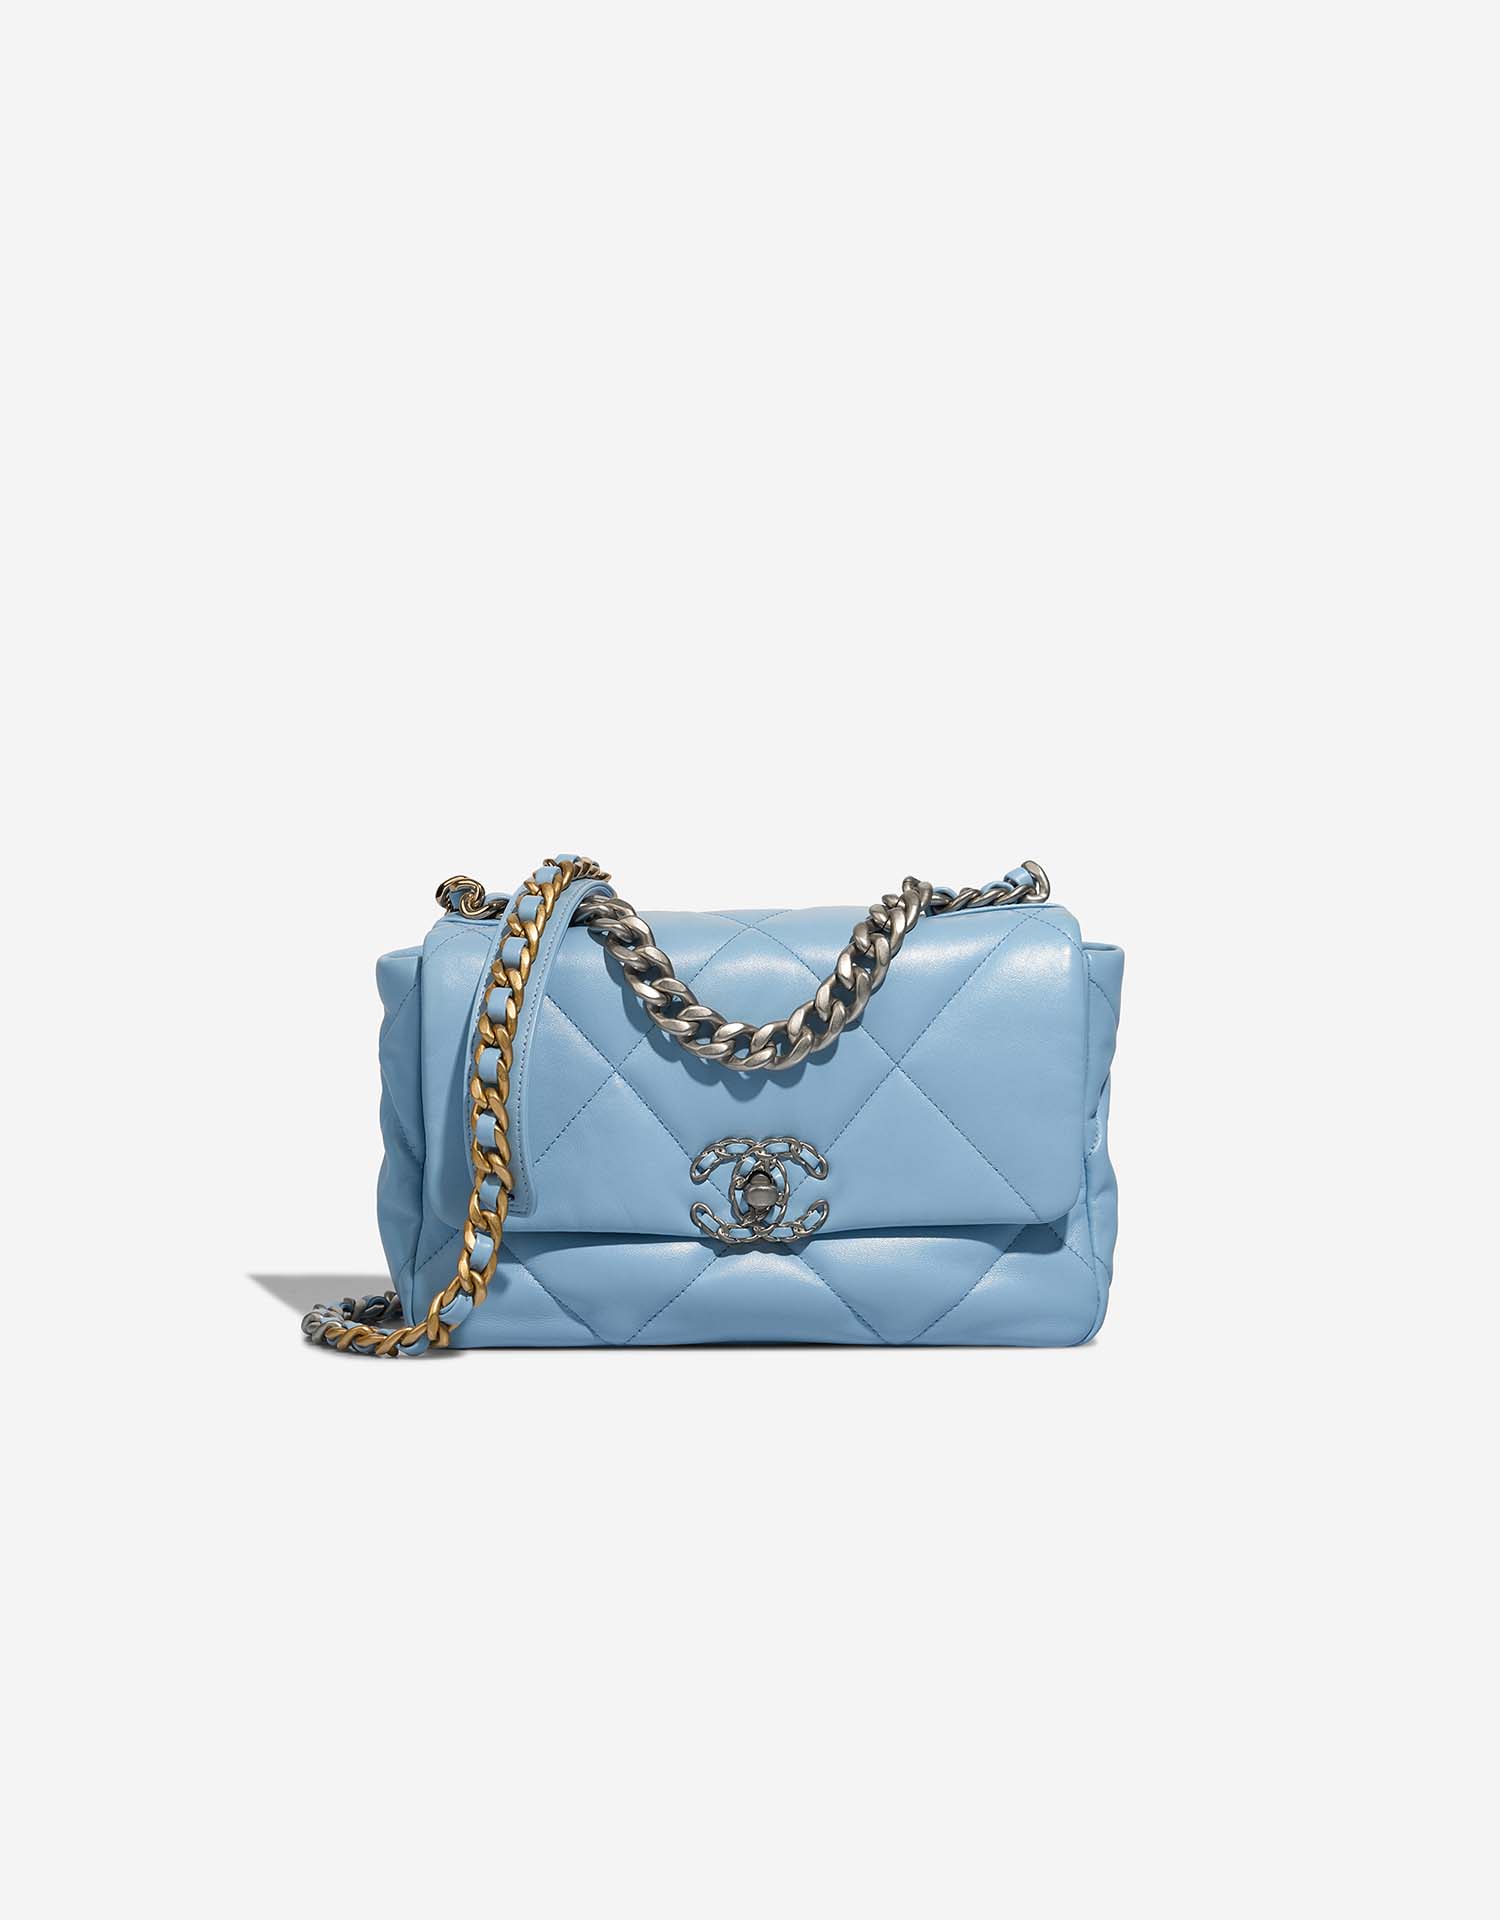 Chanel 19 Flap Bag Lamb Light Blue | SACLÀB